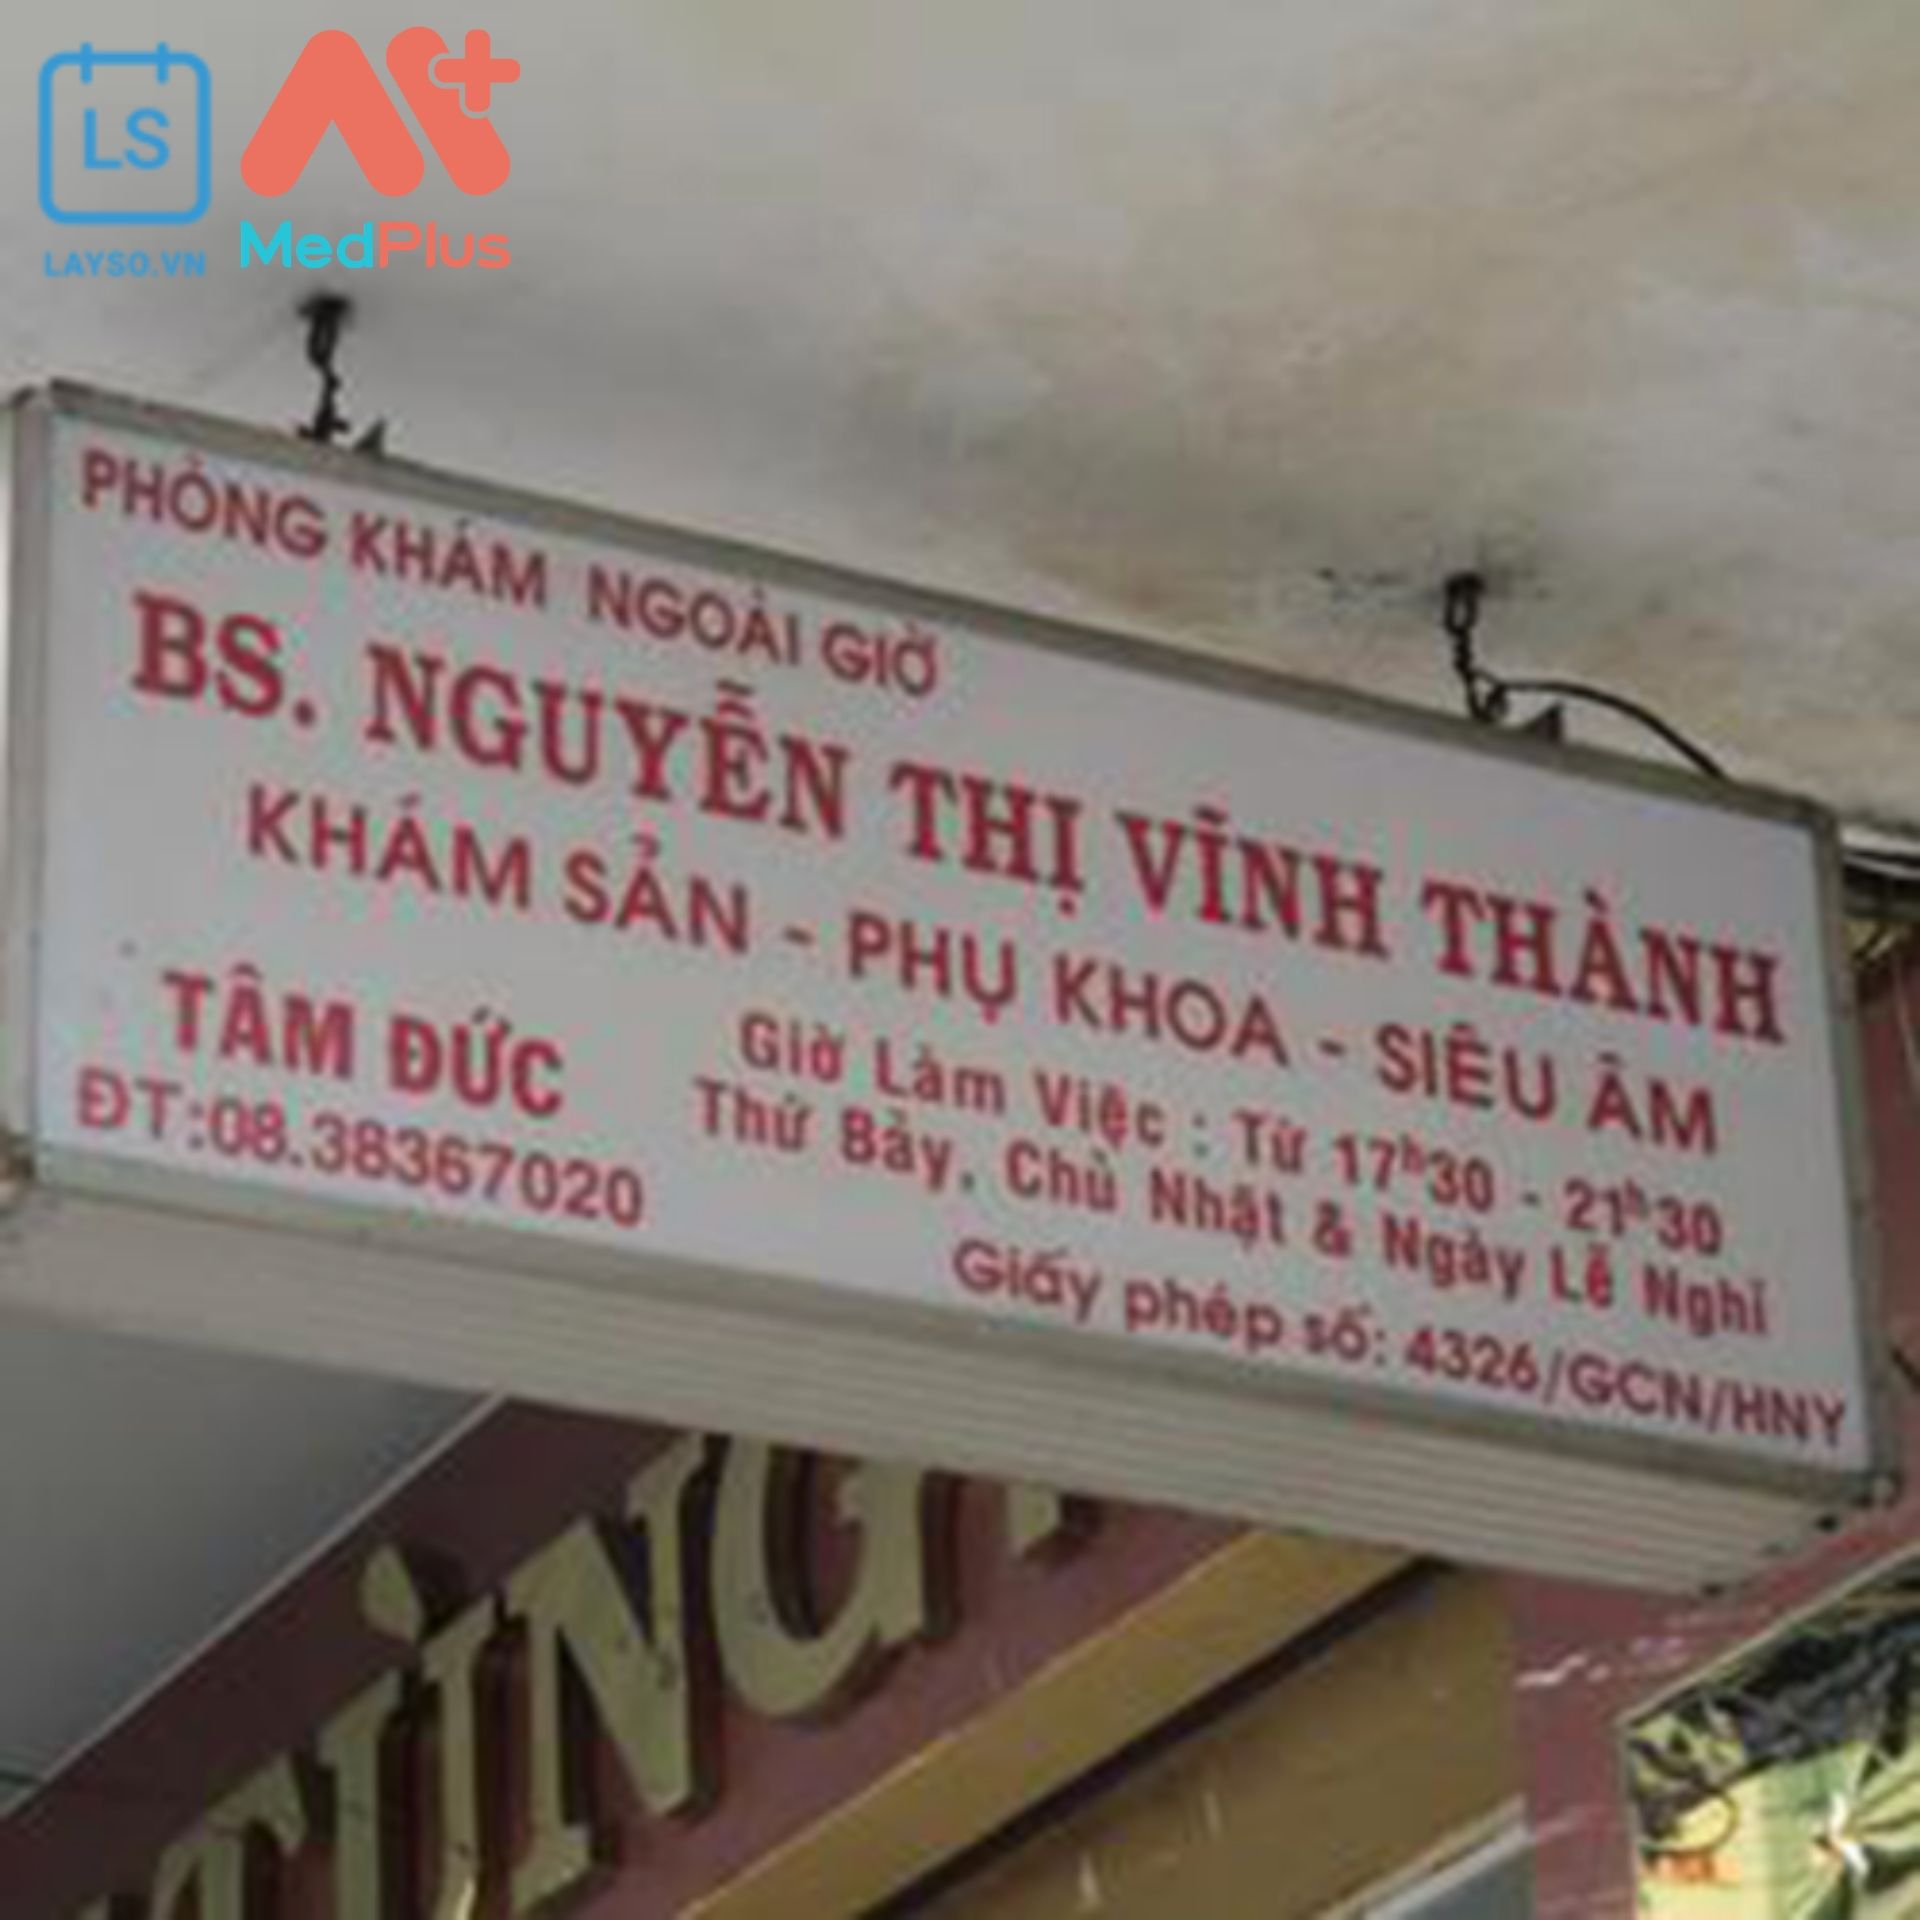 Phòng khám sản phụ khoa BS. Nguyễn Thị Vĩnh Thành